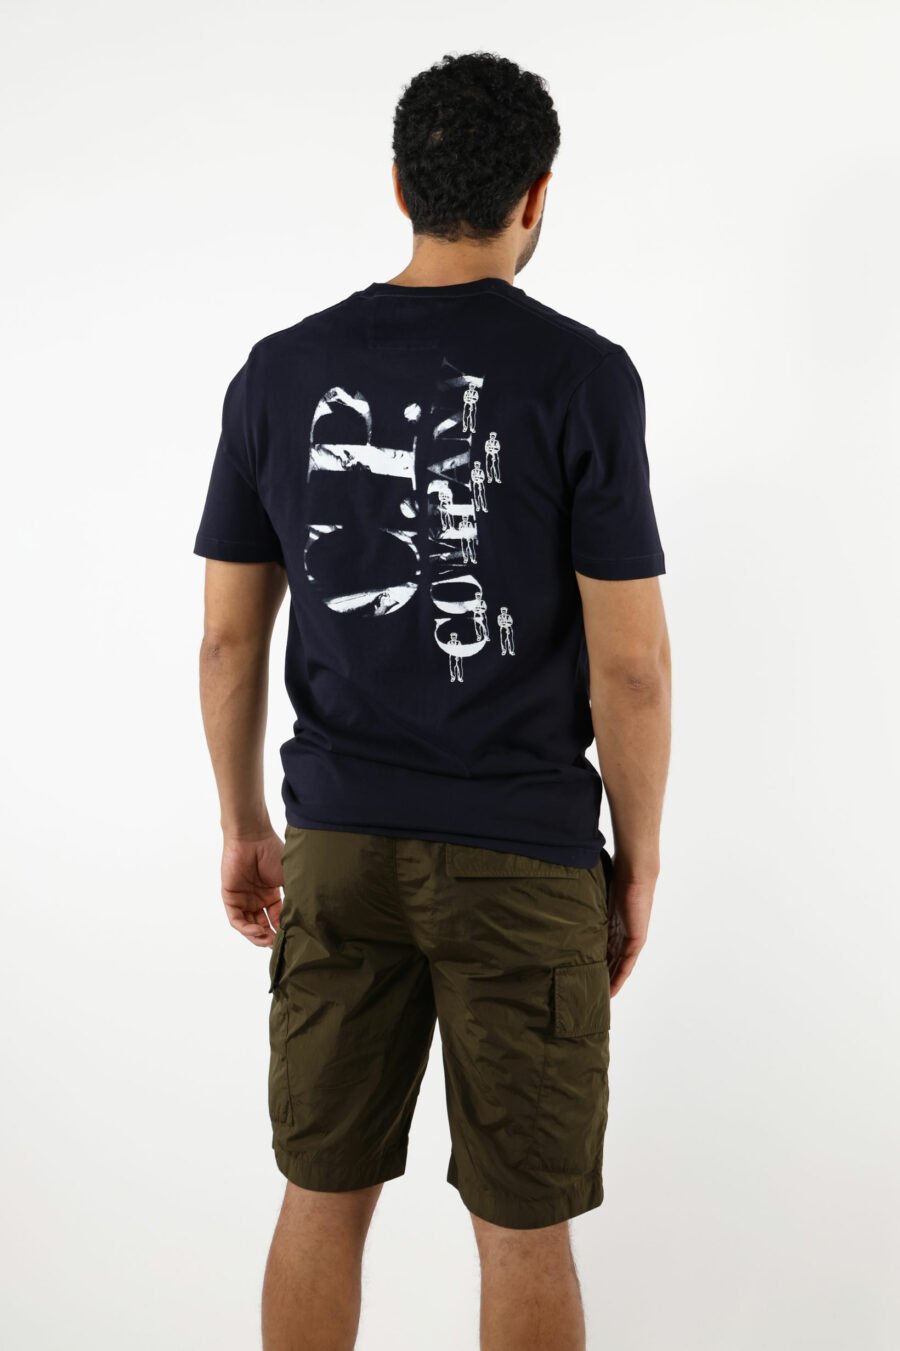 Dunkelblaues T-Shirt mit Minilogue "cp" mit zentrierten Matrosen - 111349